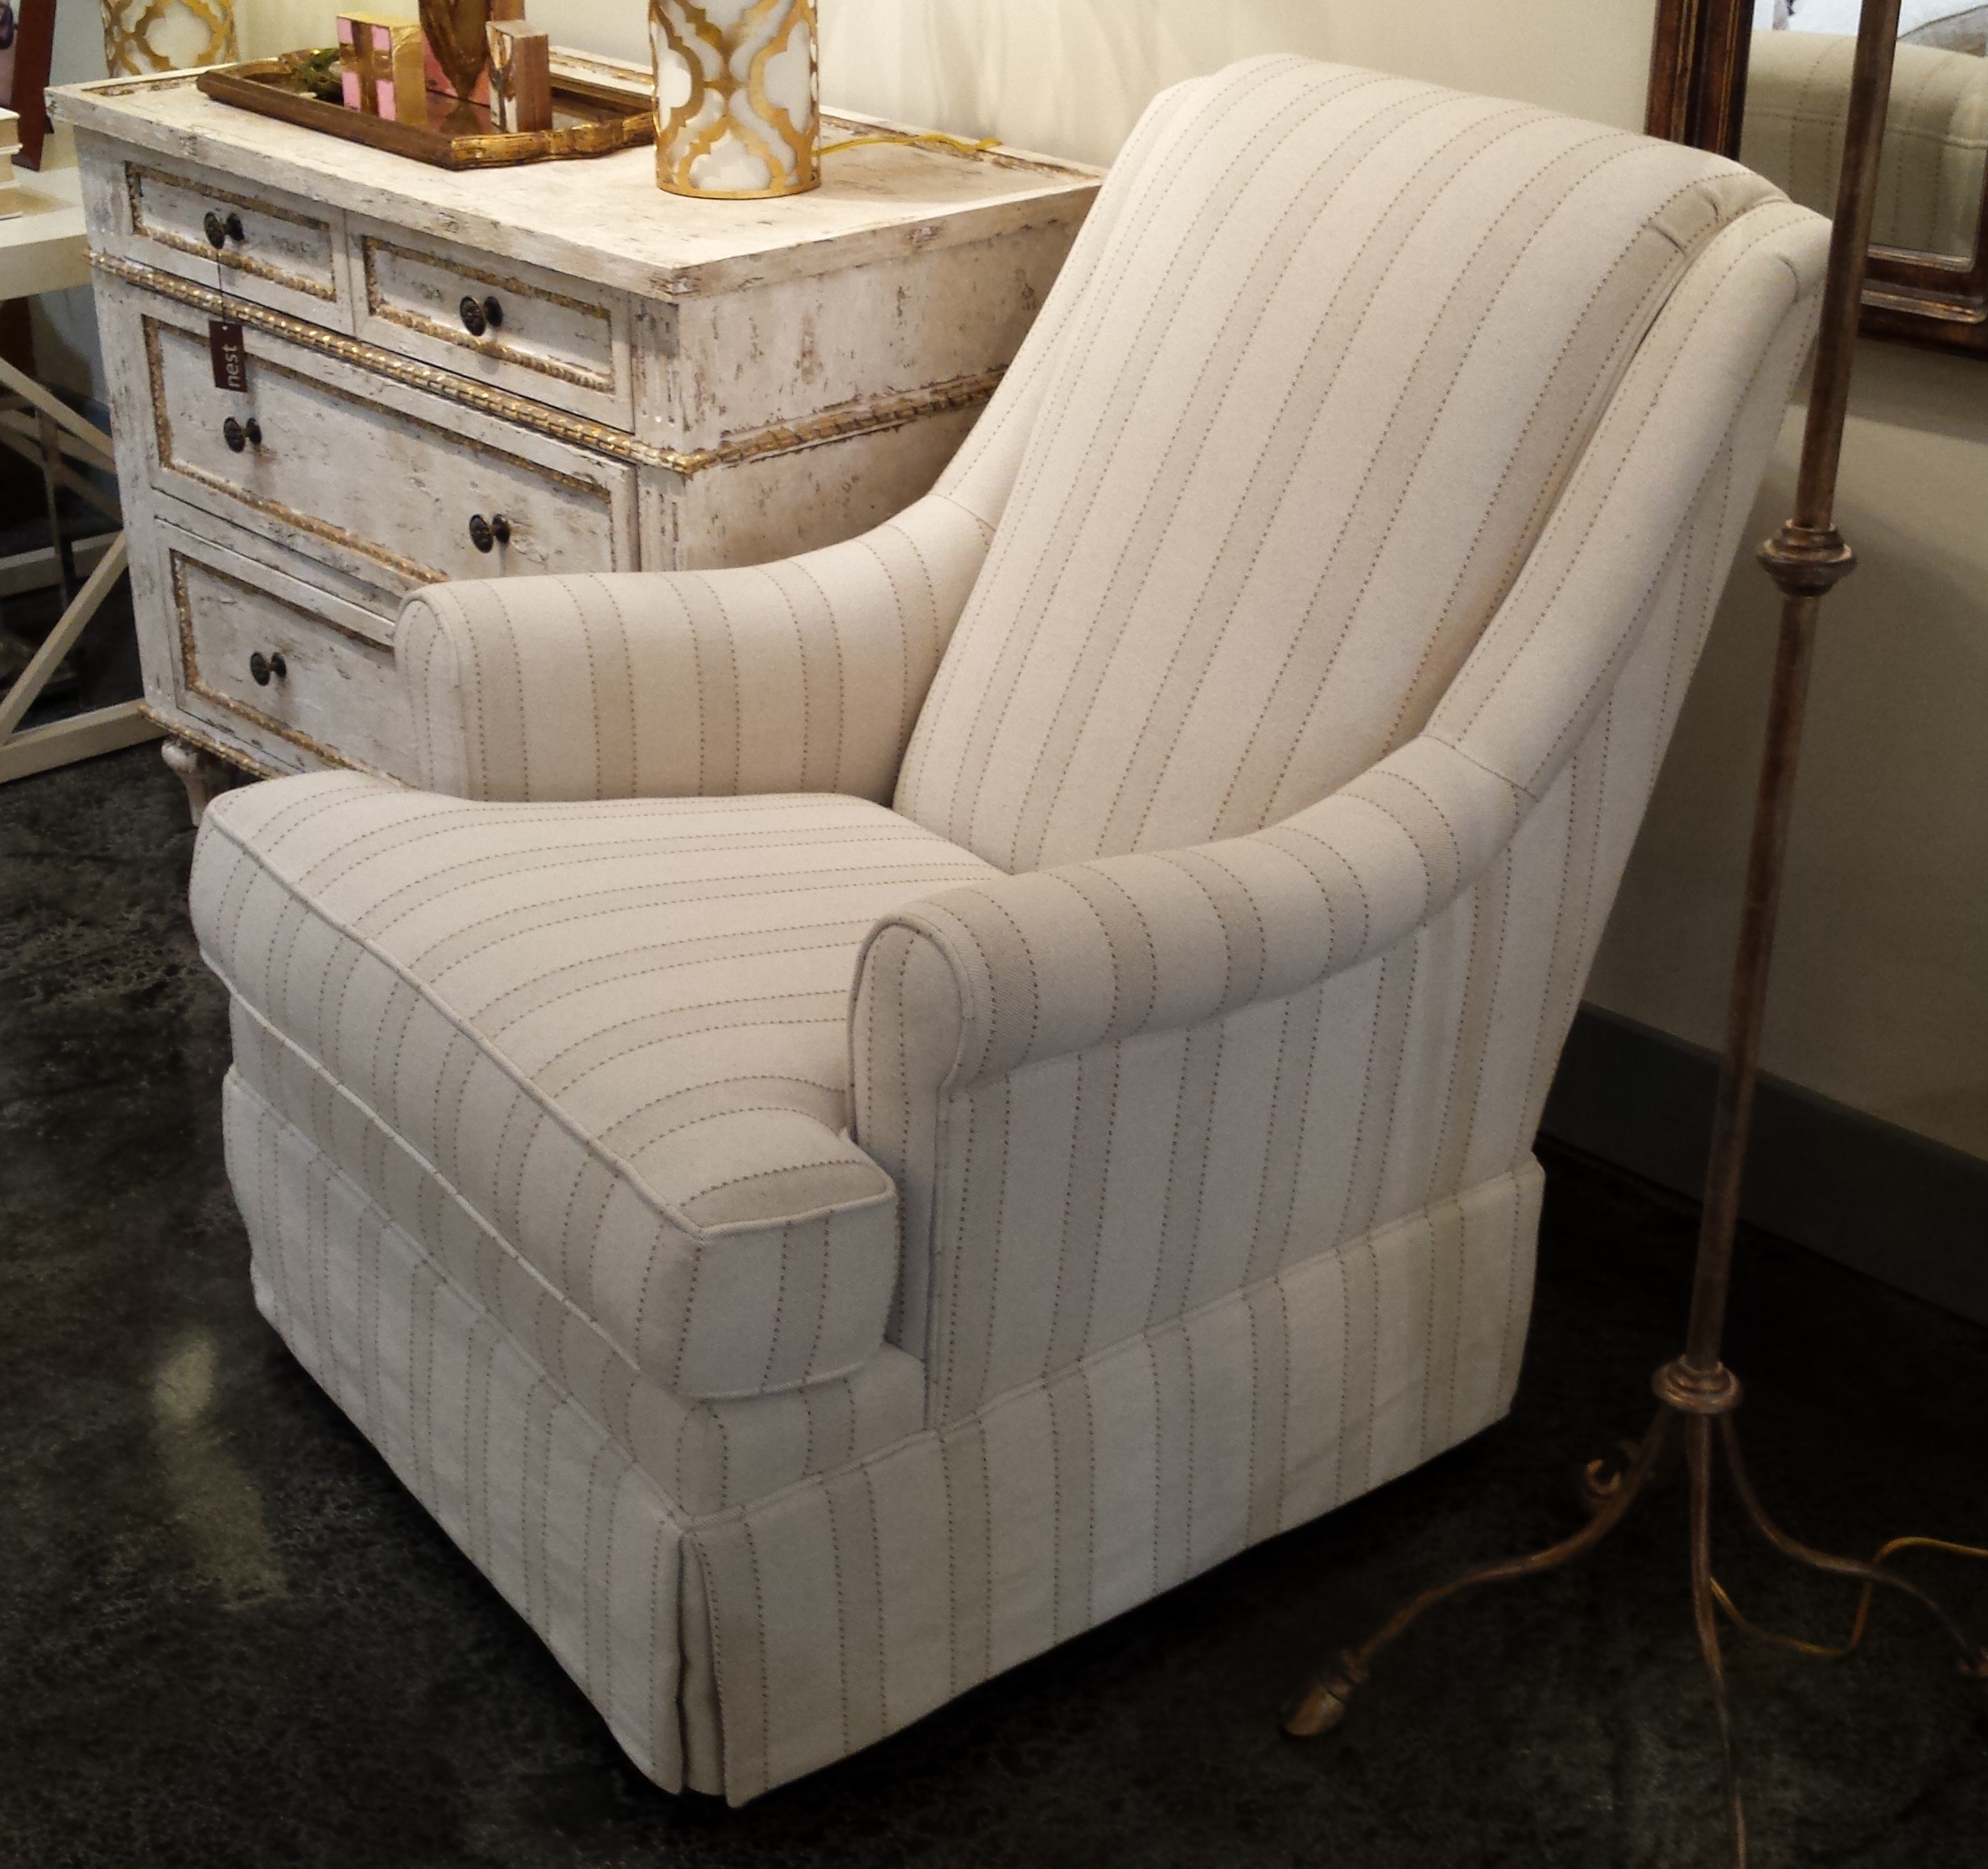 CR Laine Holden Chair